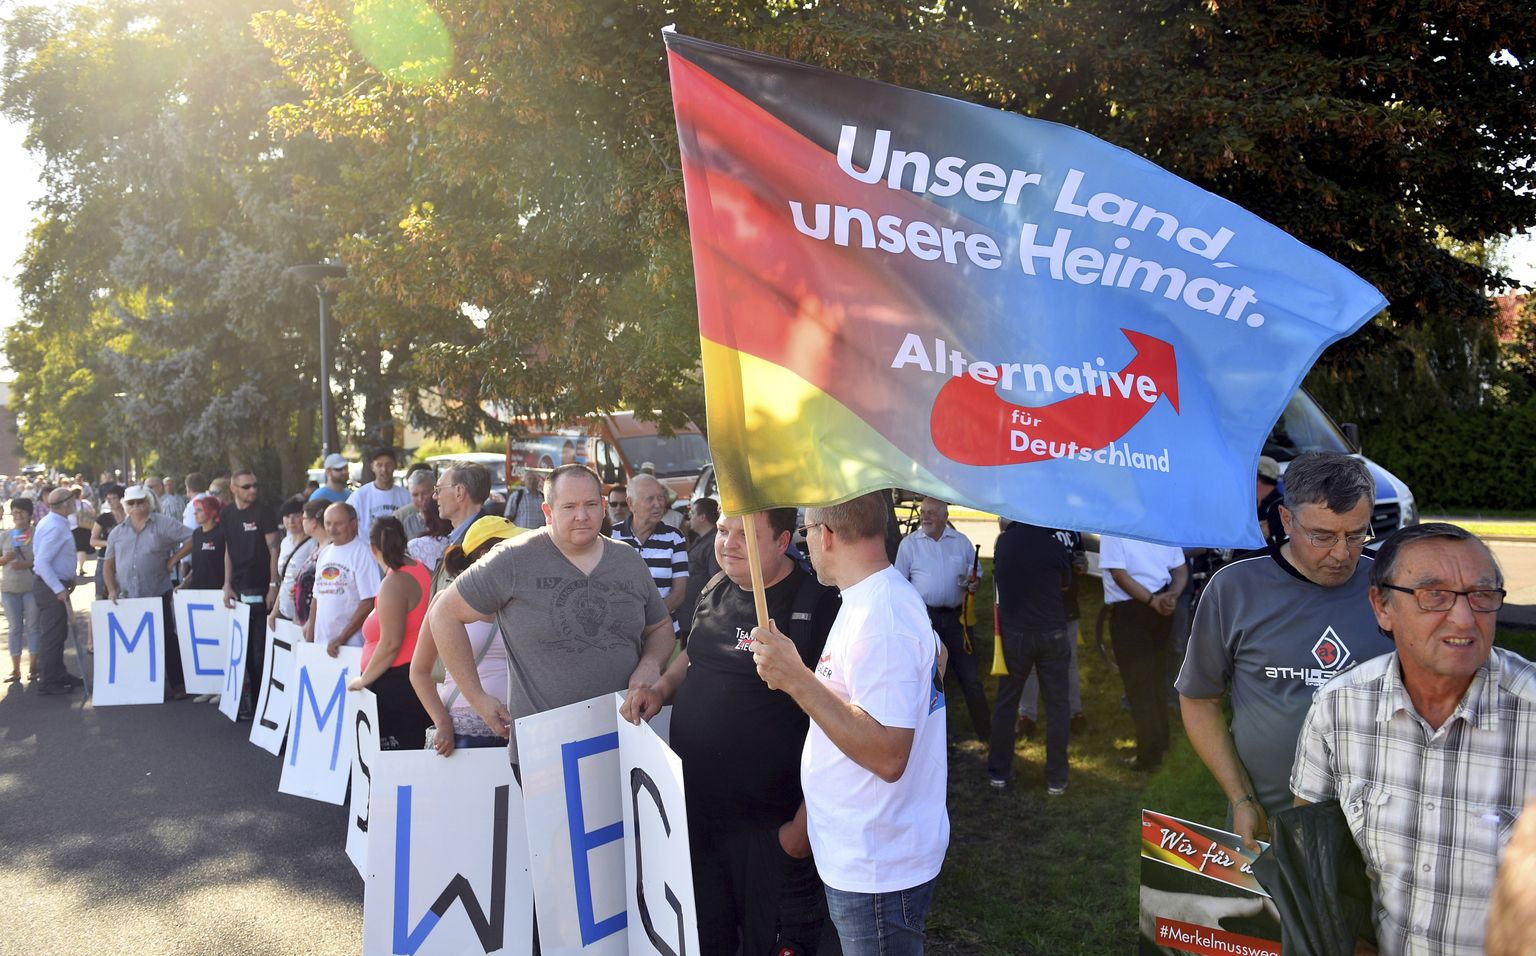 Saksa parempopulistlik partei AfD tahab lisaks piiride sulgemisele ka Vene-vastaste sanktsioonide lõpetamist.